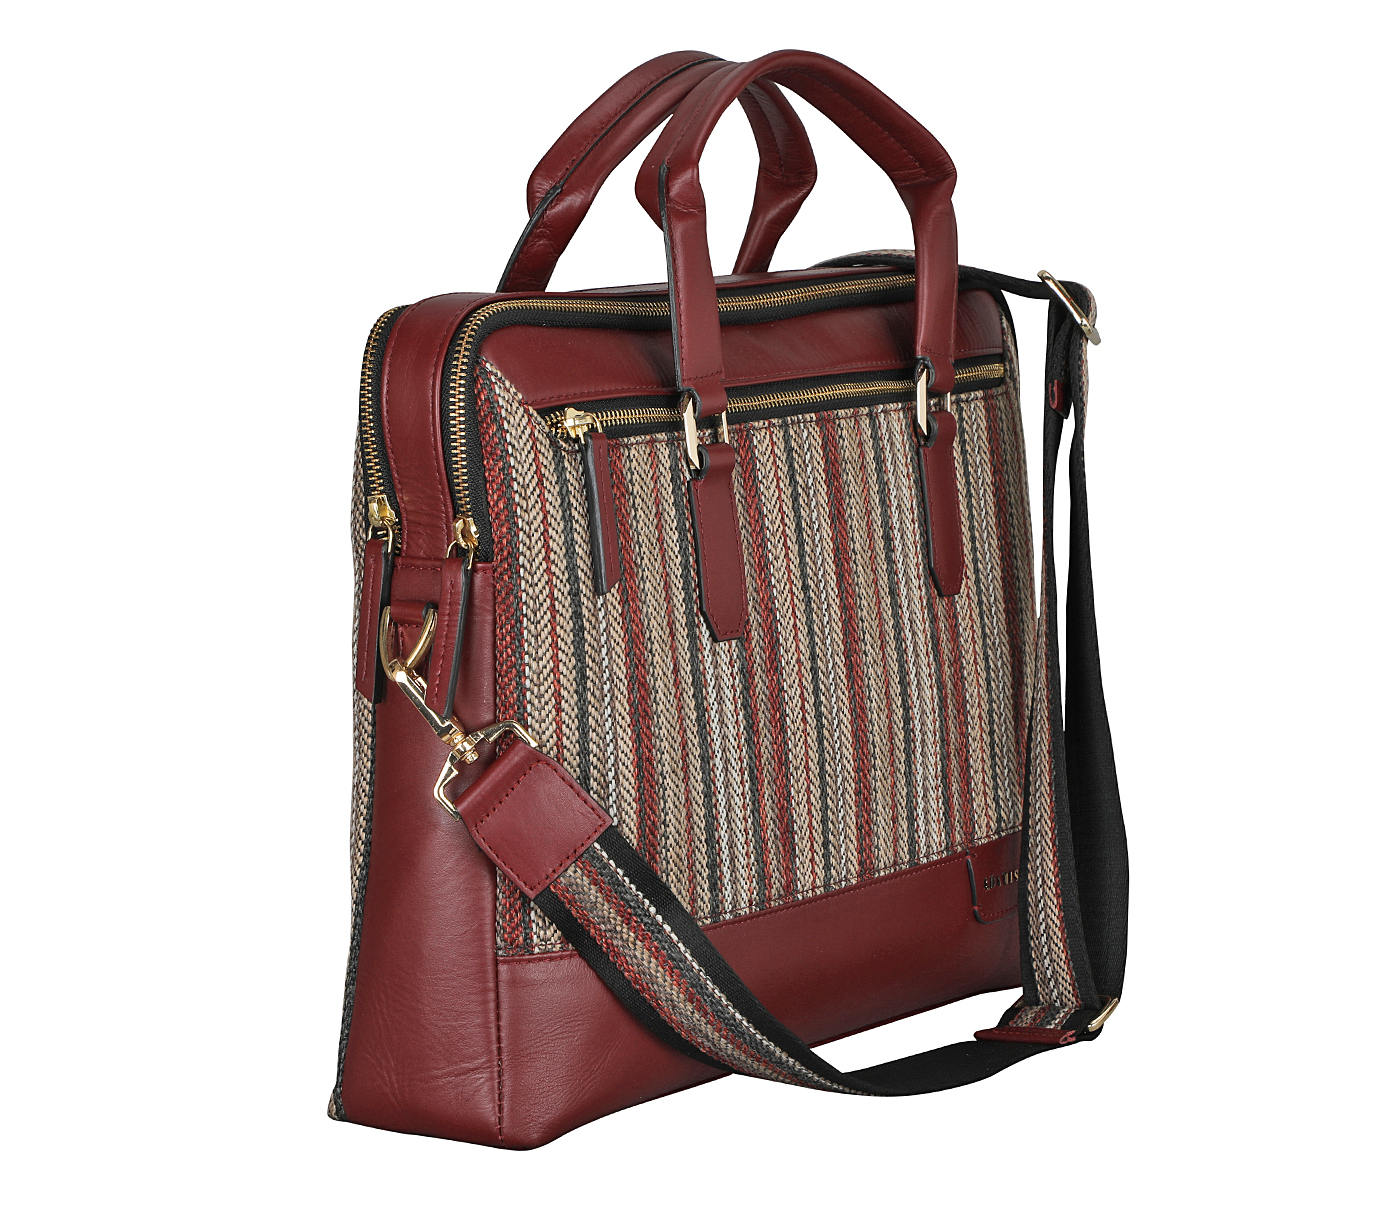 Portfolio / Laptop Bag-Alvaro-Laptop cum portfolio bag in Multi colored Stripes print fabric with Genuine Leather combination - Wine